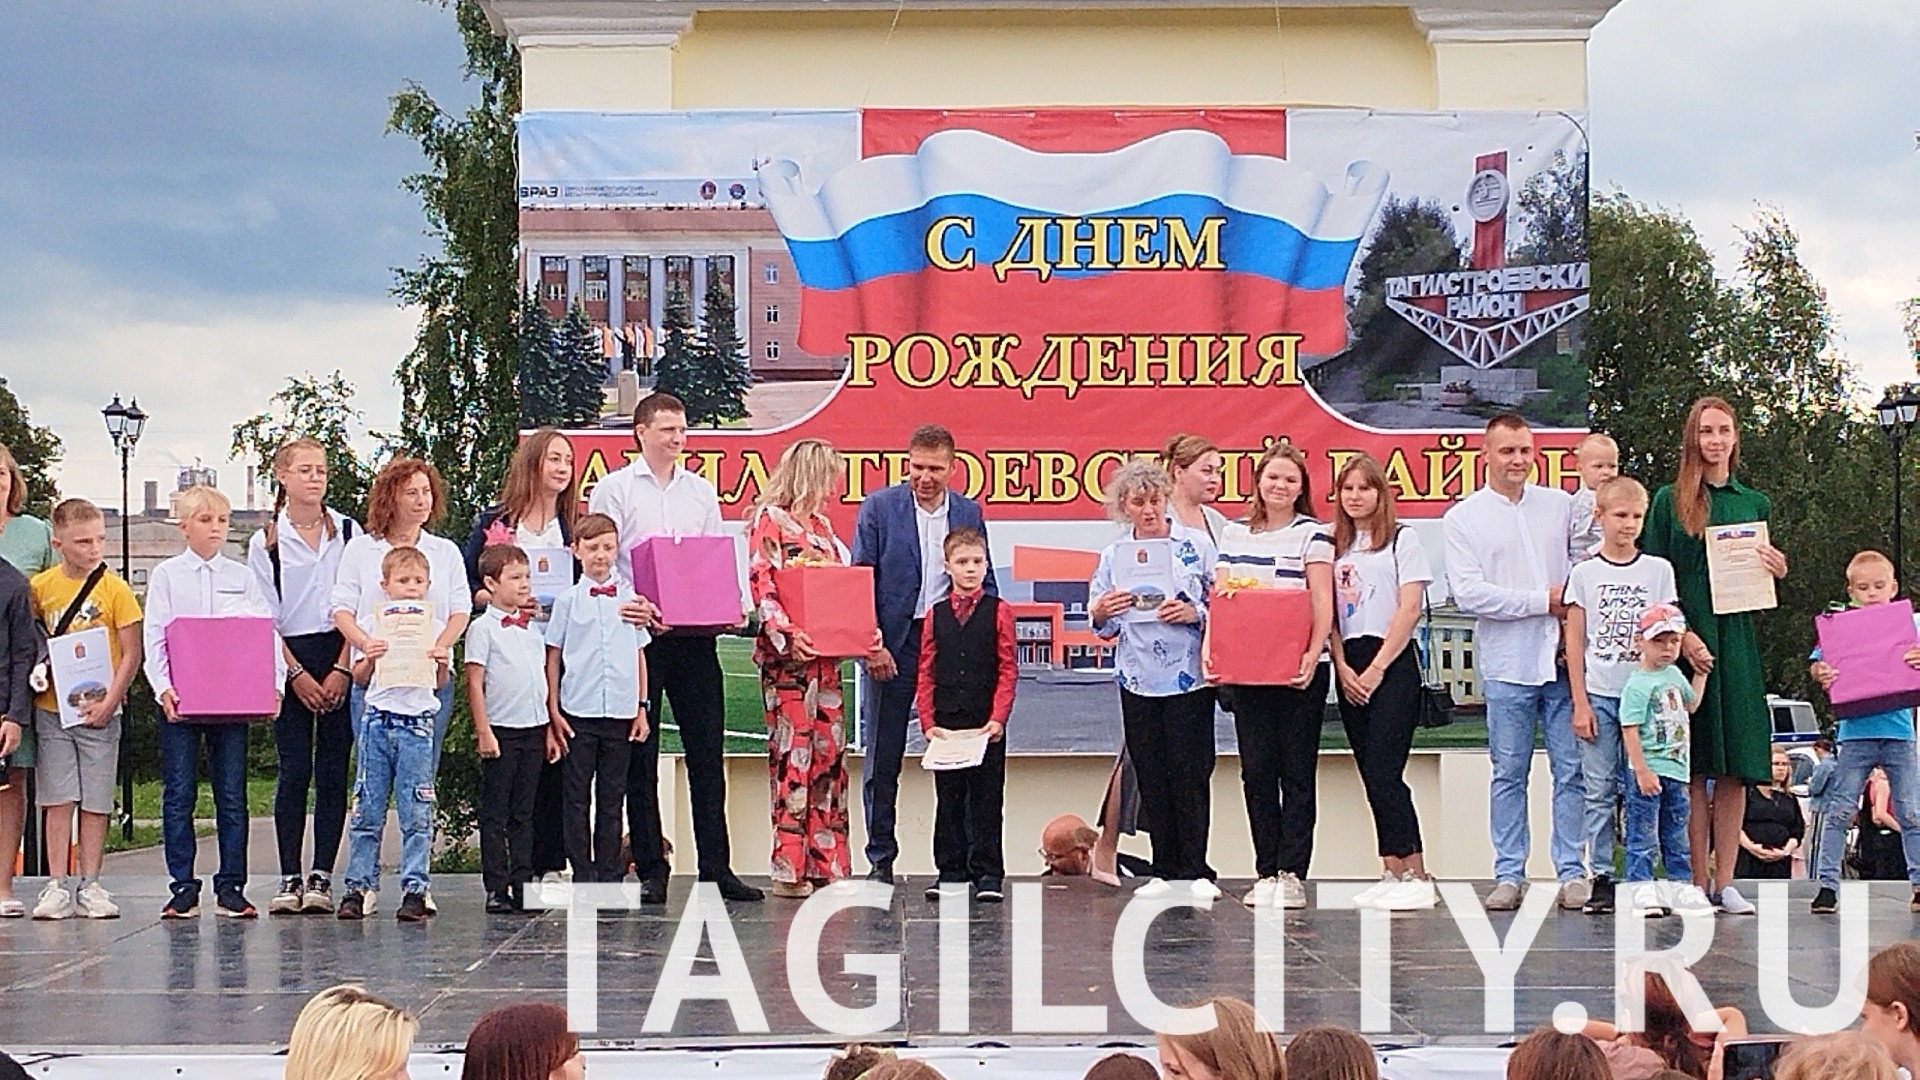 Тагилстроевский район Нижнего Тагила отметил 89-й День рождения